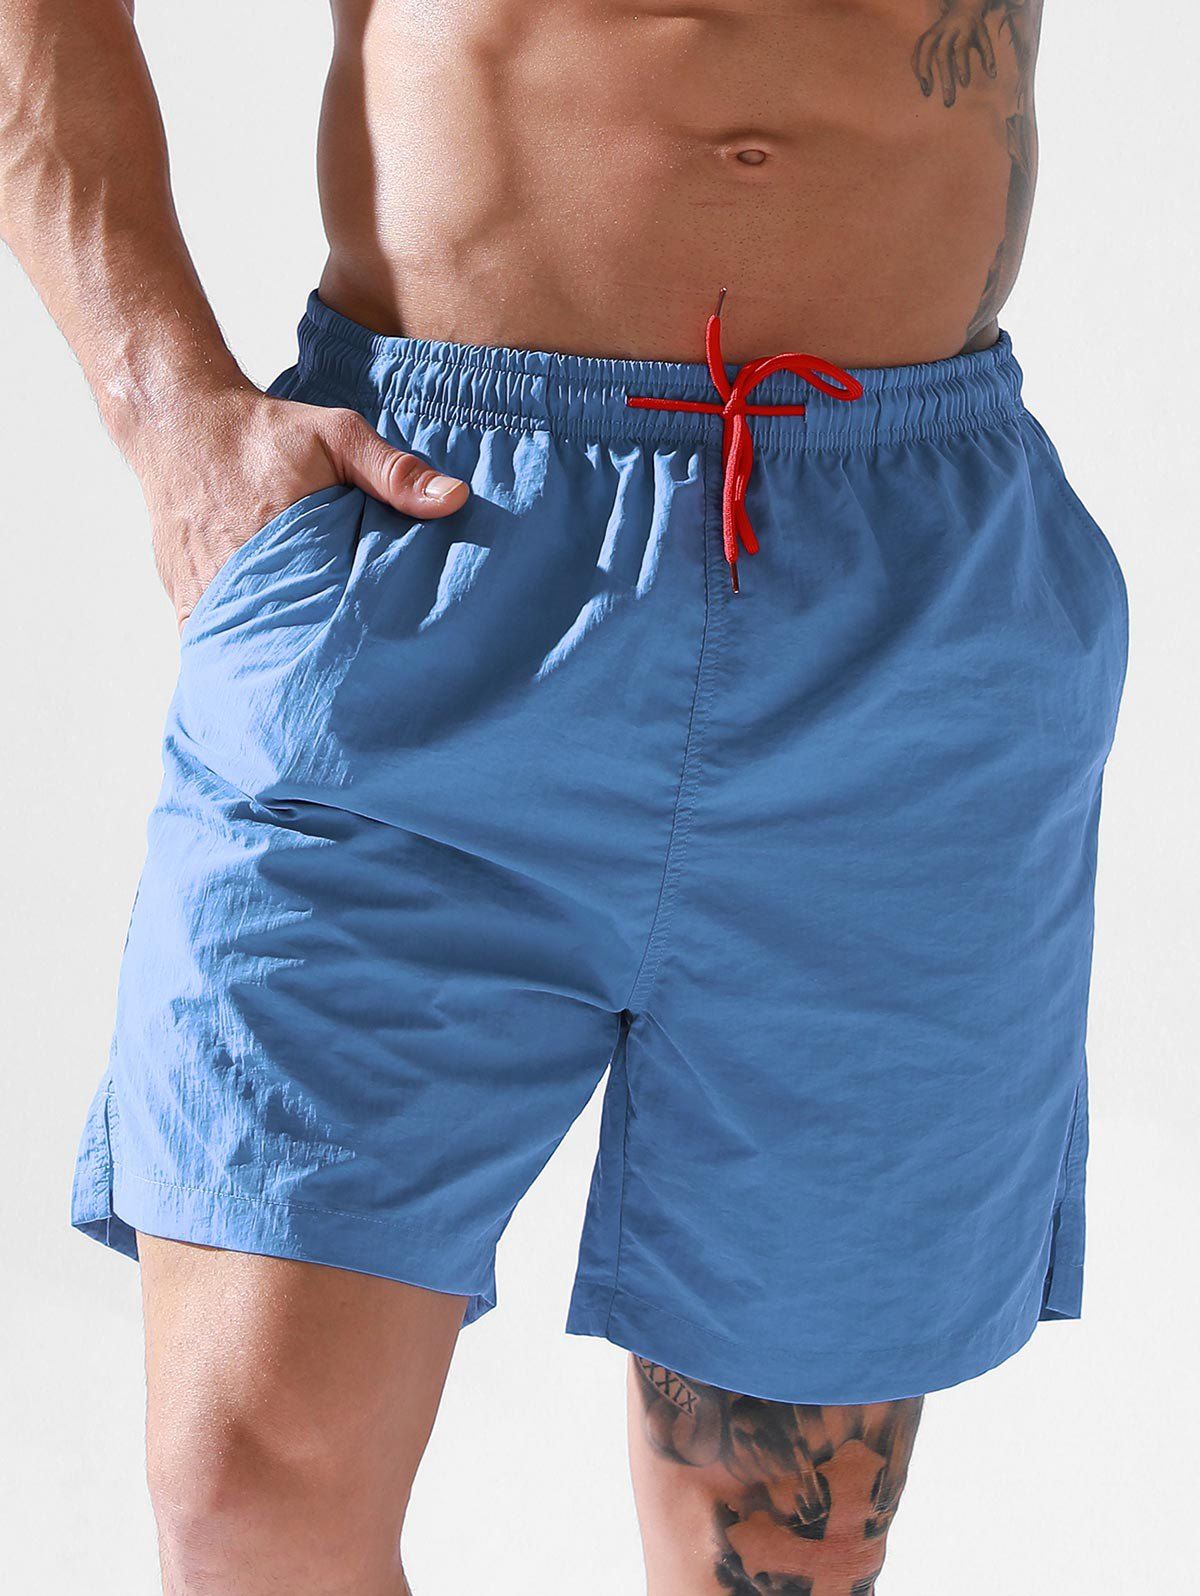 Vacation Casual Board Shorts Solid Color Drawstrings Pockets Basic Summer Beach Shorts - BLUE XL